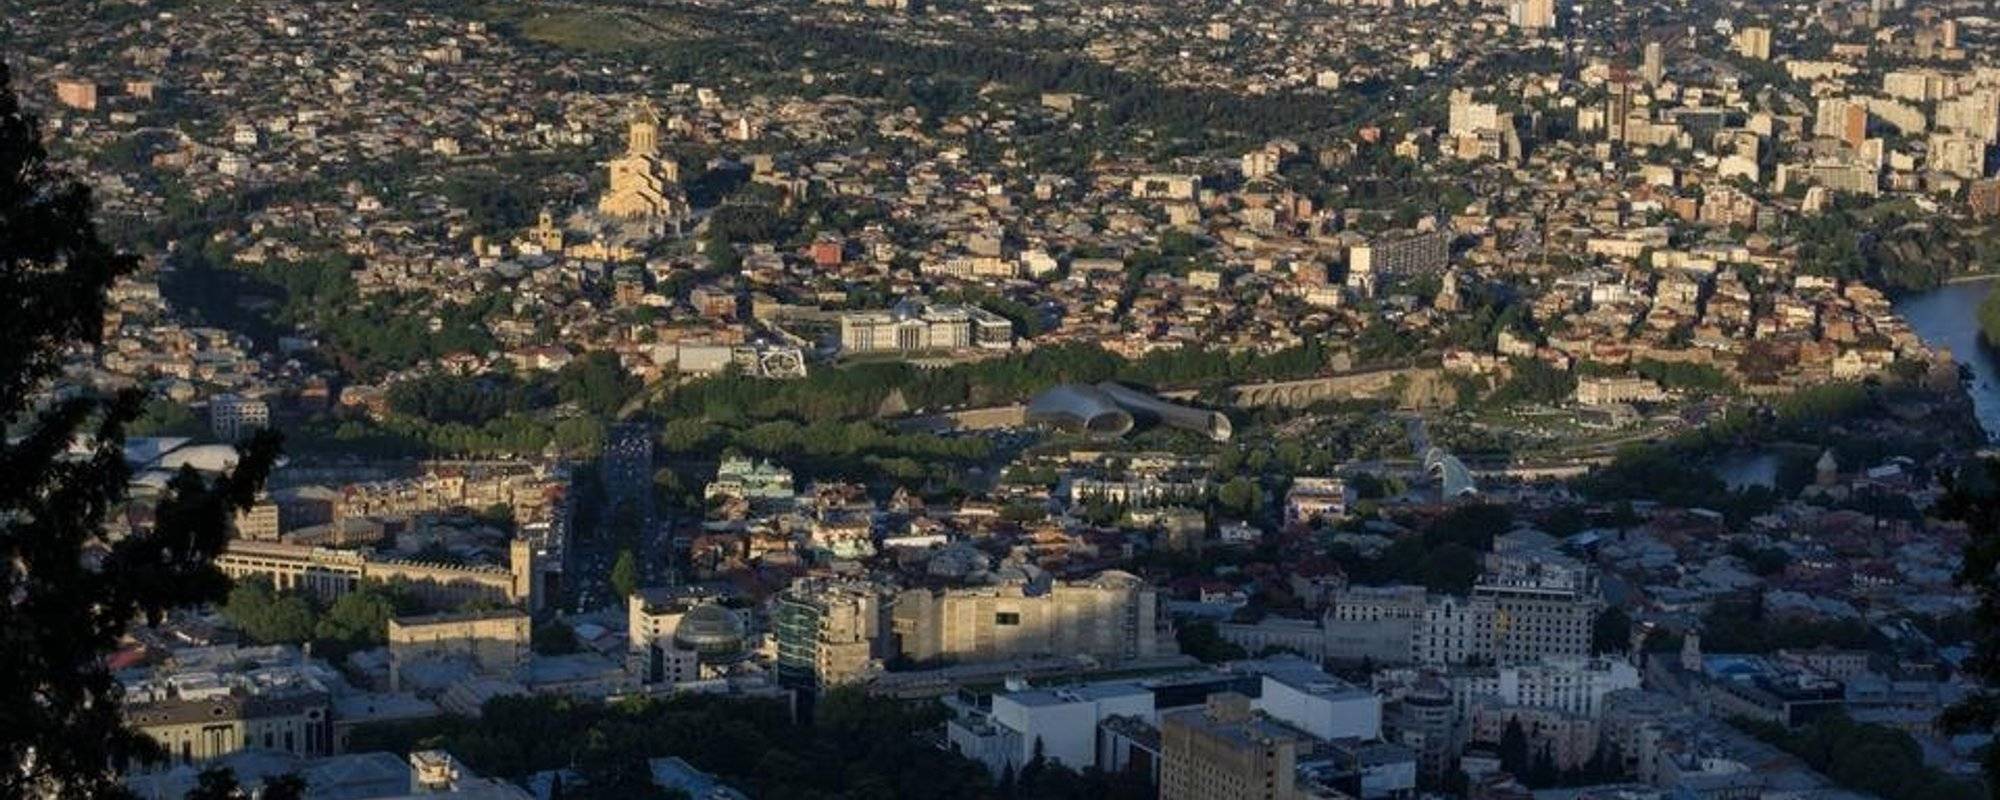 My Georgian Diary. Day 1/7 - Tbilisi